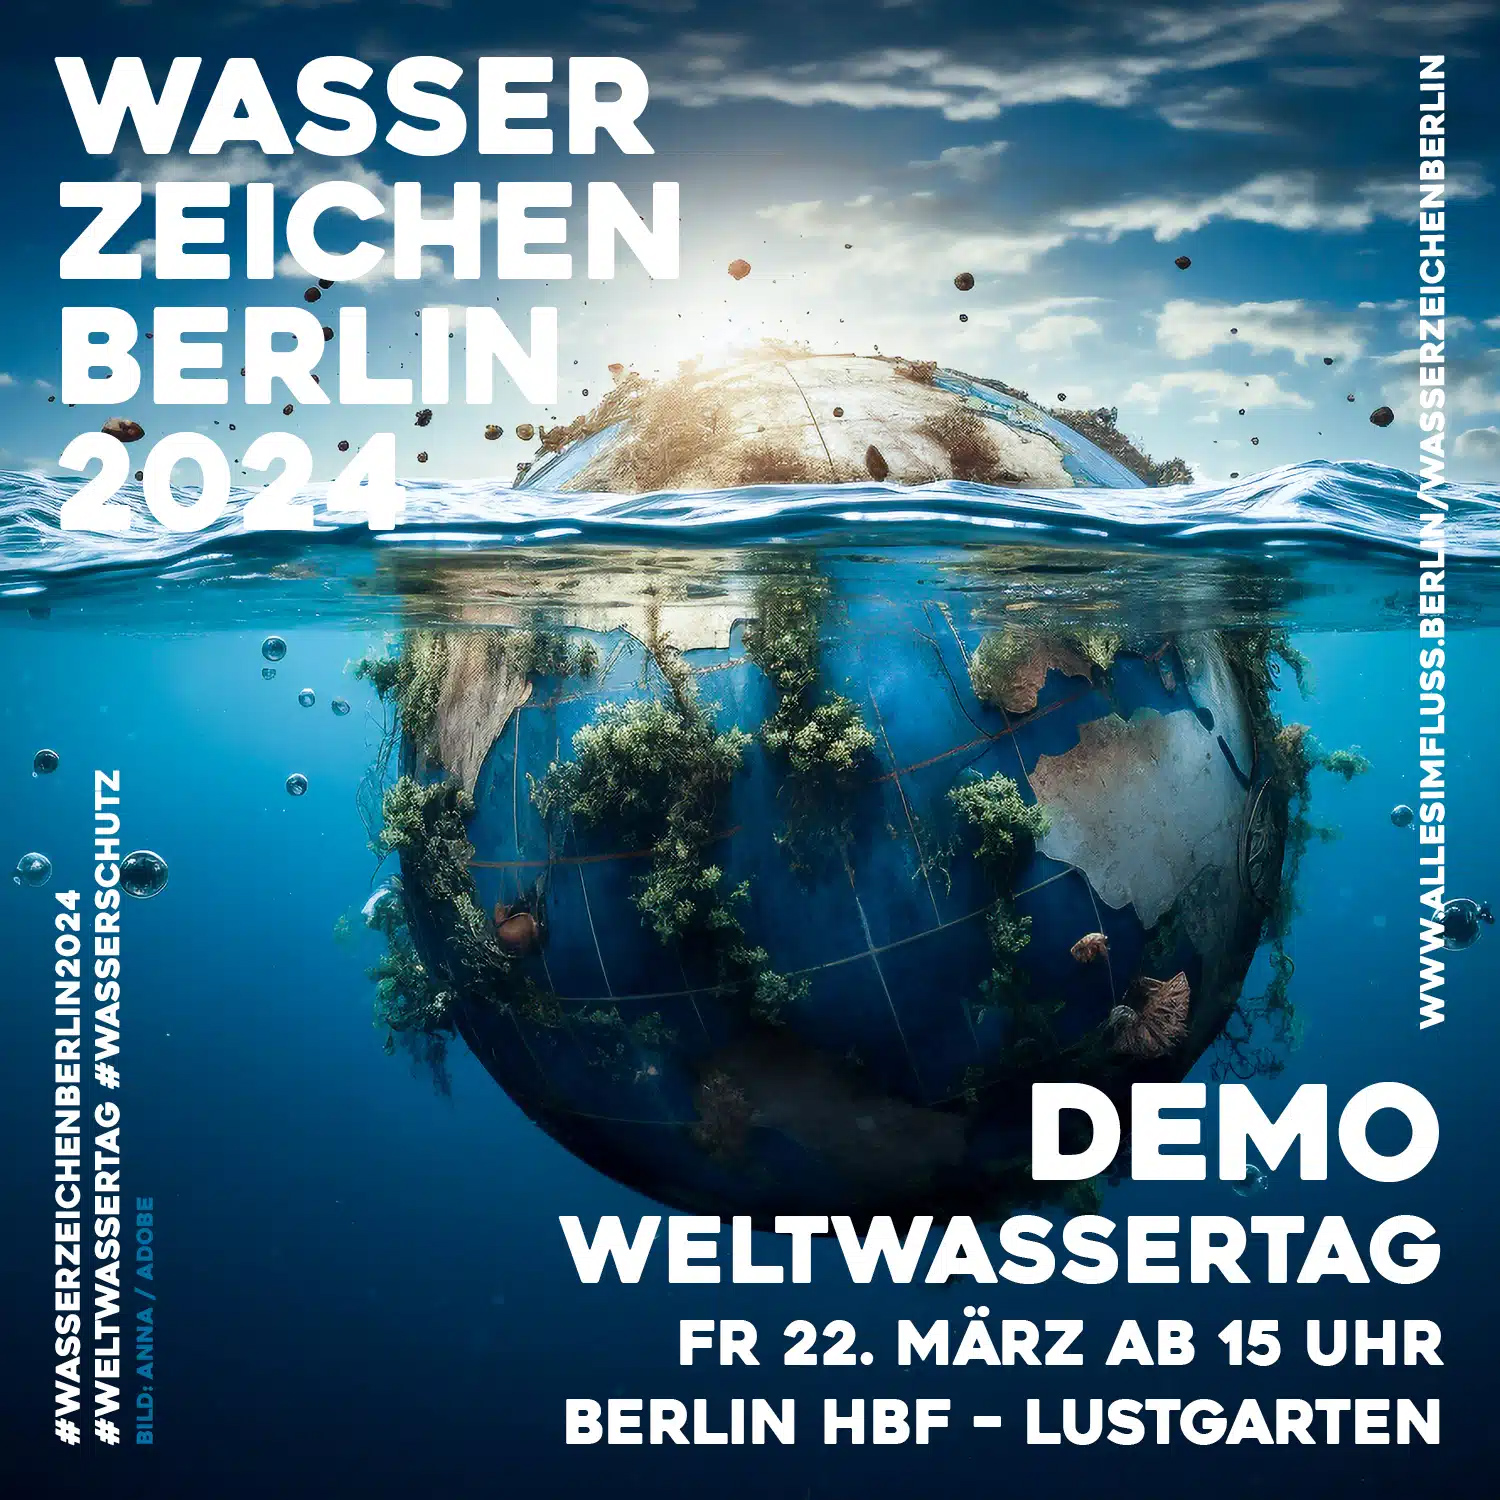 Demo “Wasserzeichen Berlin” zum Weltwassertag 2024 am 22. März